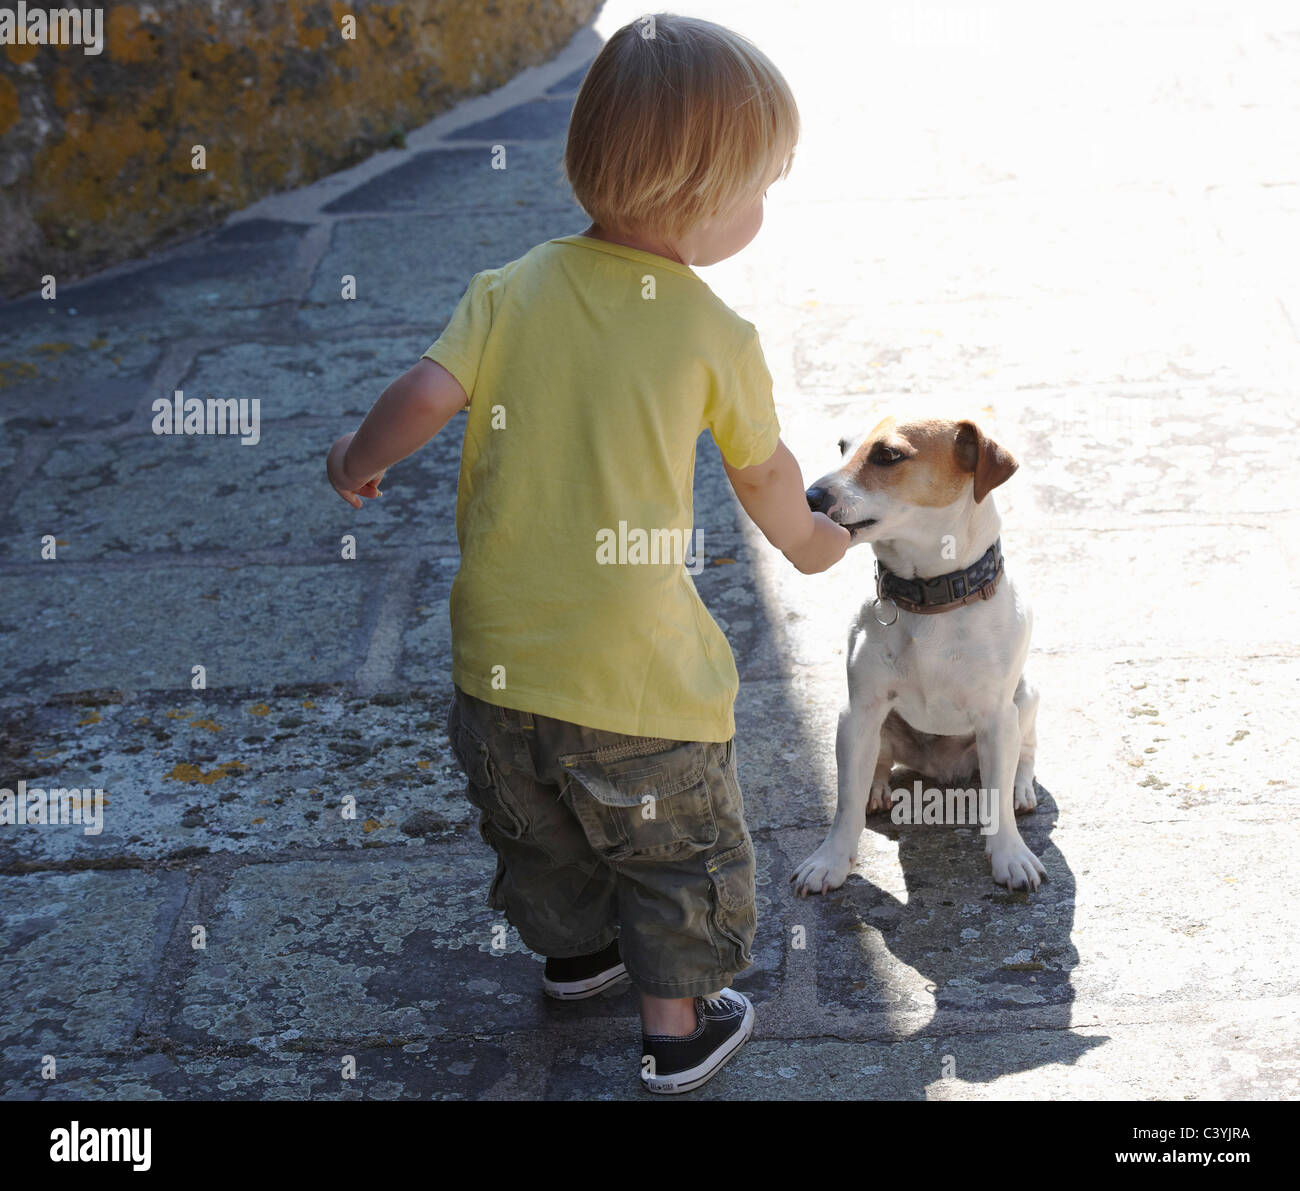 Bébé Garçon jouant avec un chien Banque D'Images